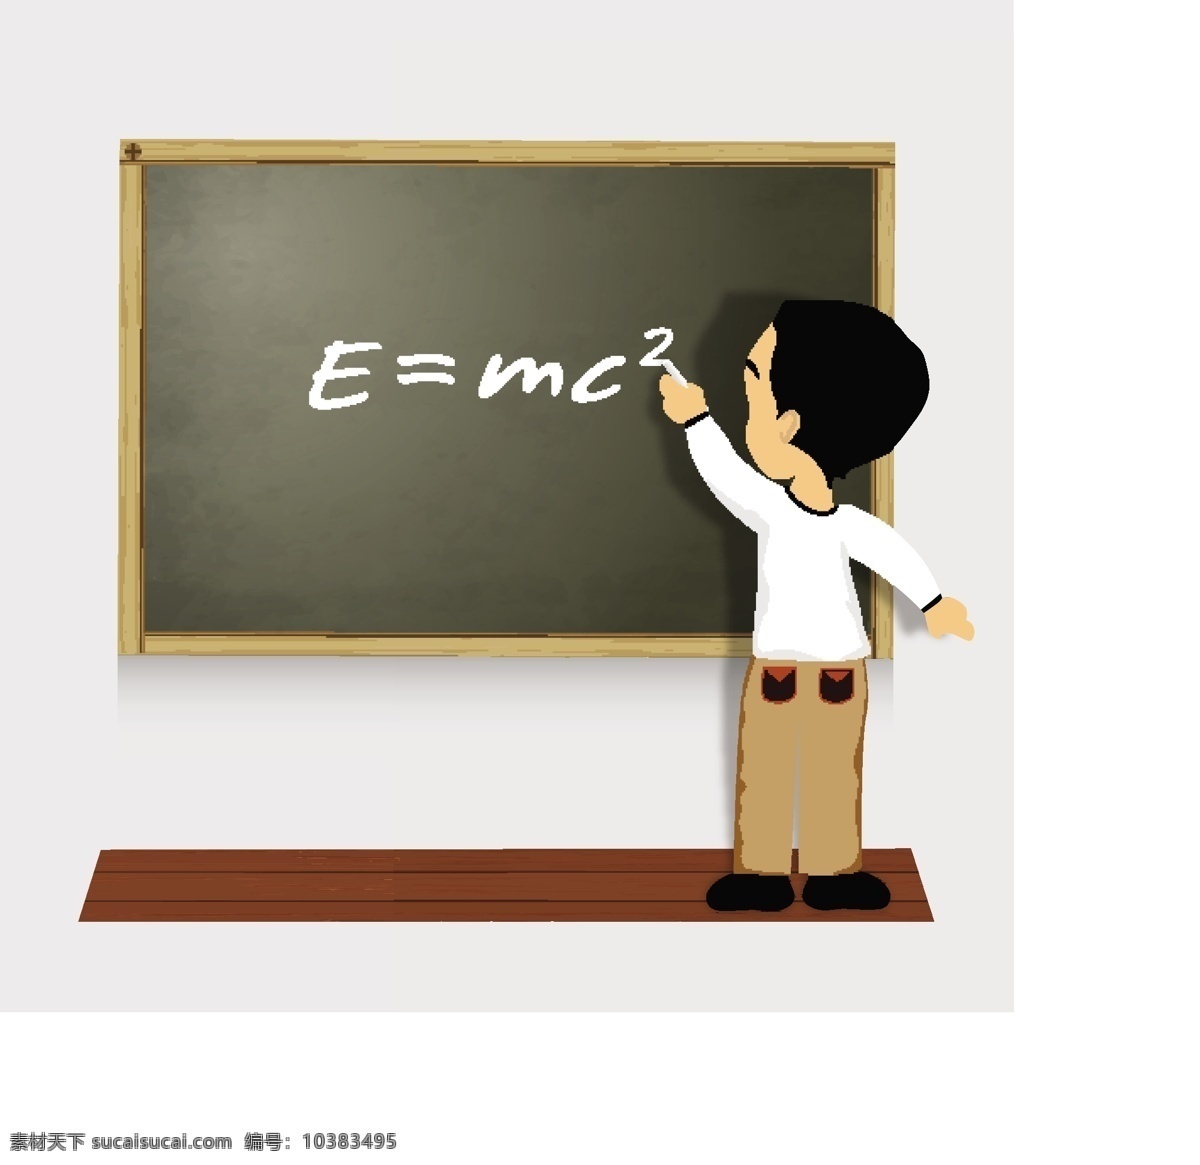 质量 能量 质能方程 学习教育 科学概念 科学图标 科技图标 物理公式 卡通儿童 卡通学生 黑板 办公学习 生活百科 矢量素材 白色